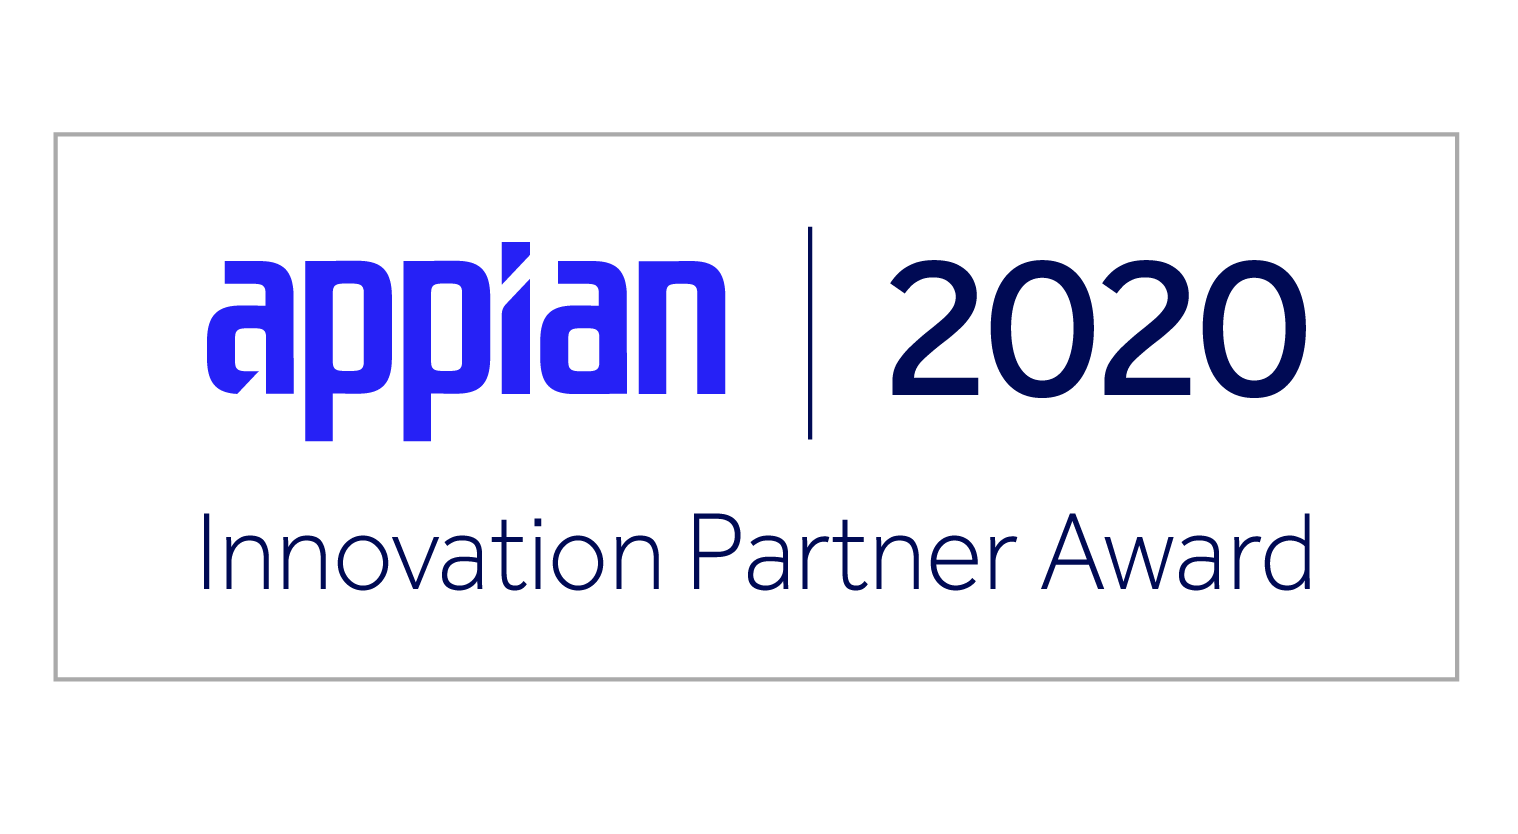 Innovation Partner Award 2020